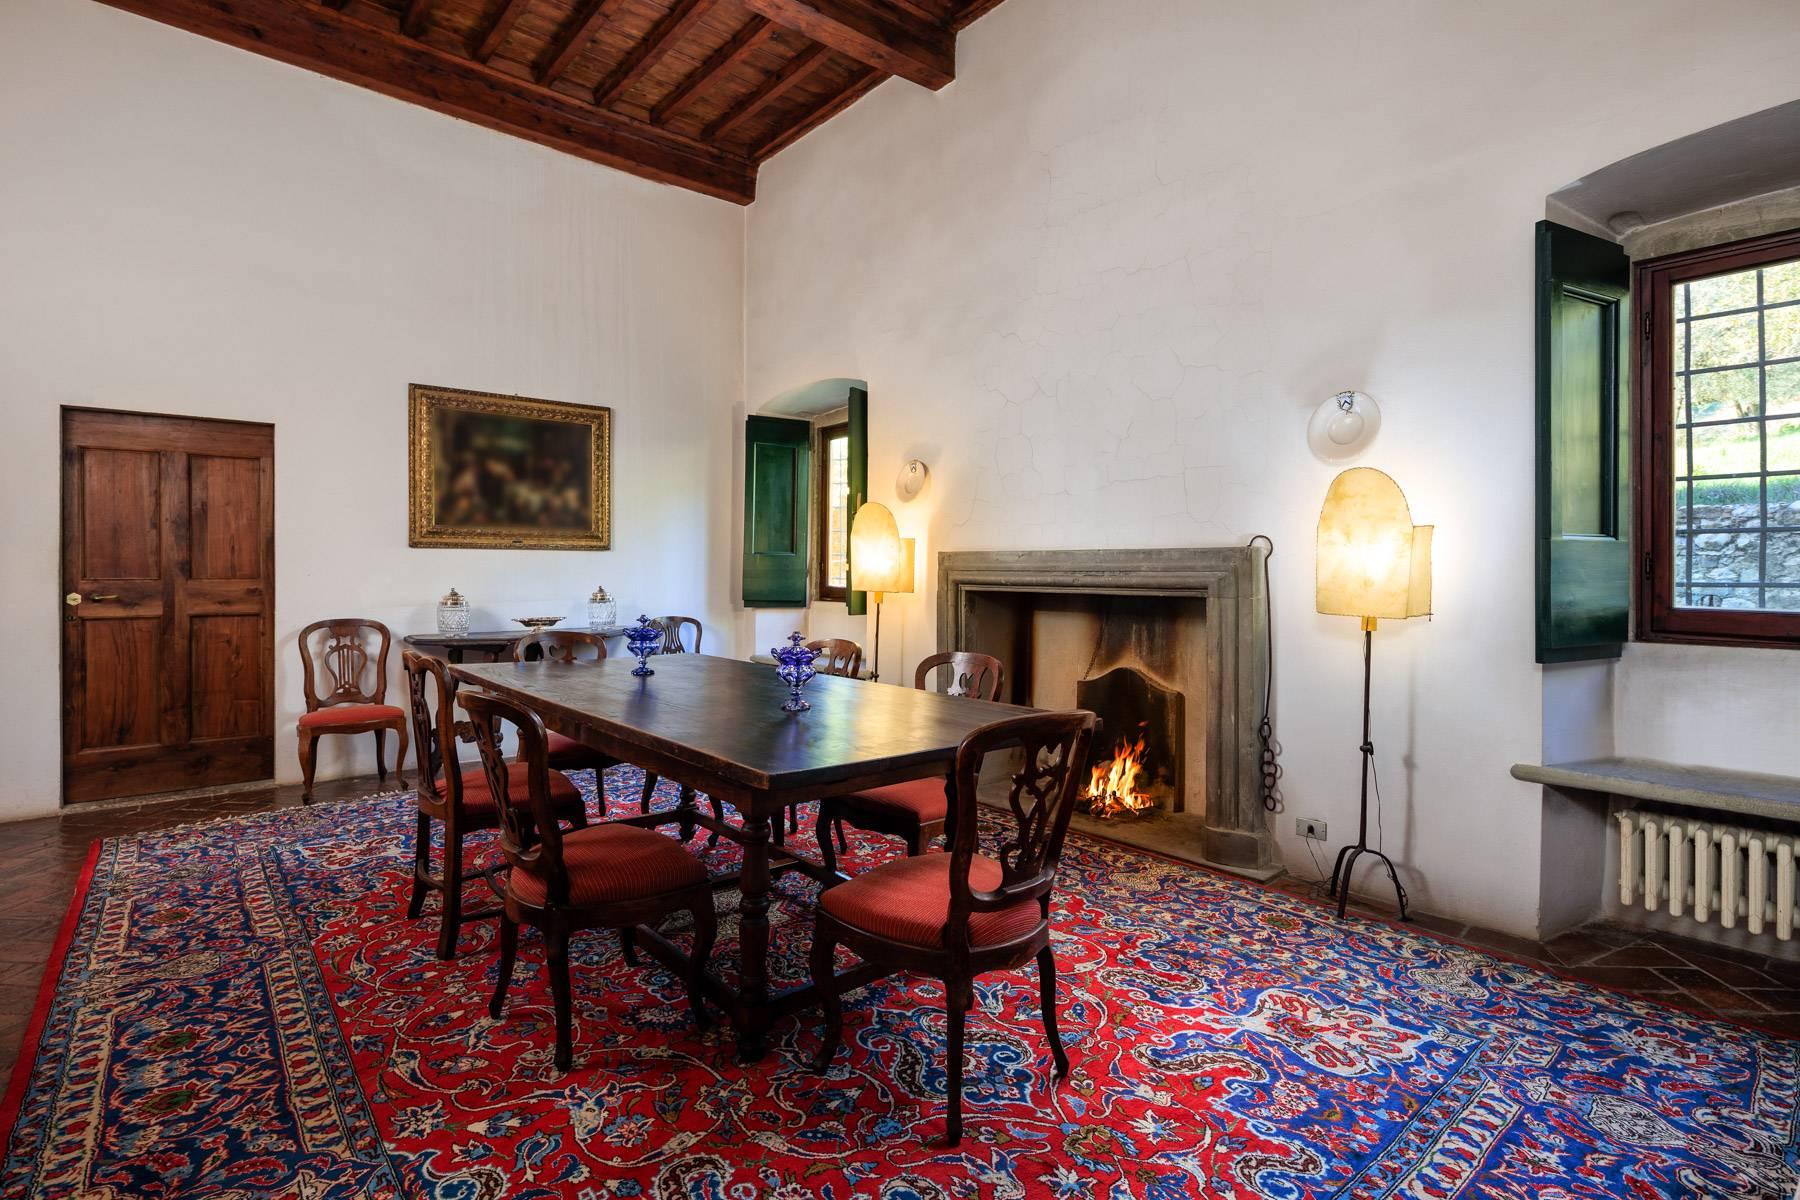 Grande villa padronale d'epoca nella più rinomata zona olearia vicino a Firenze - 9